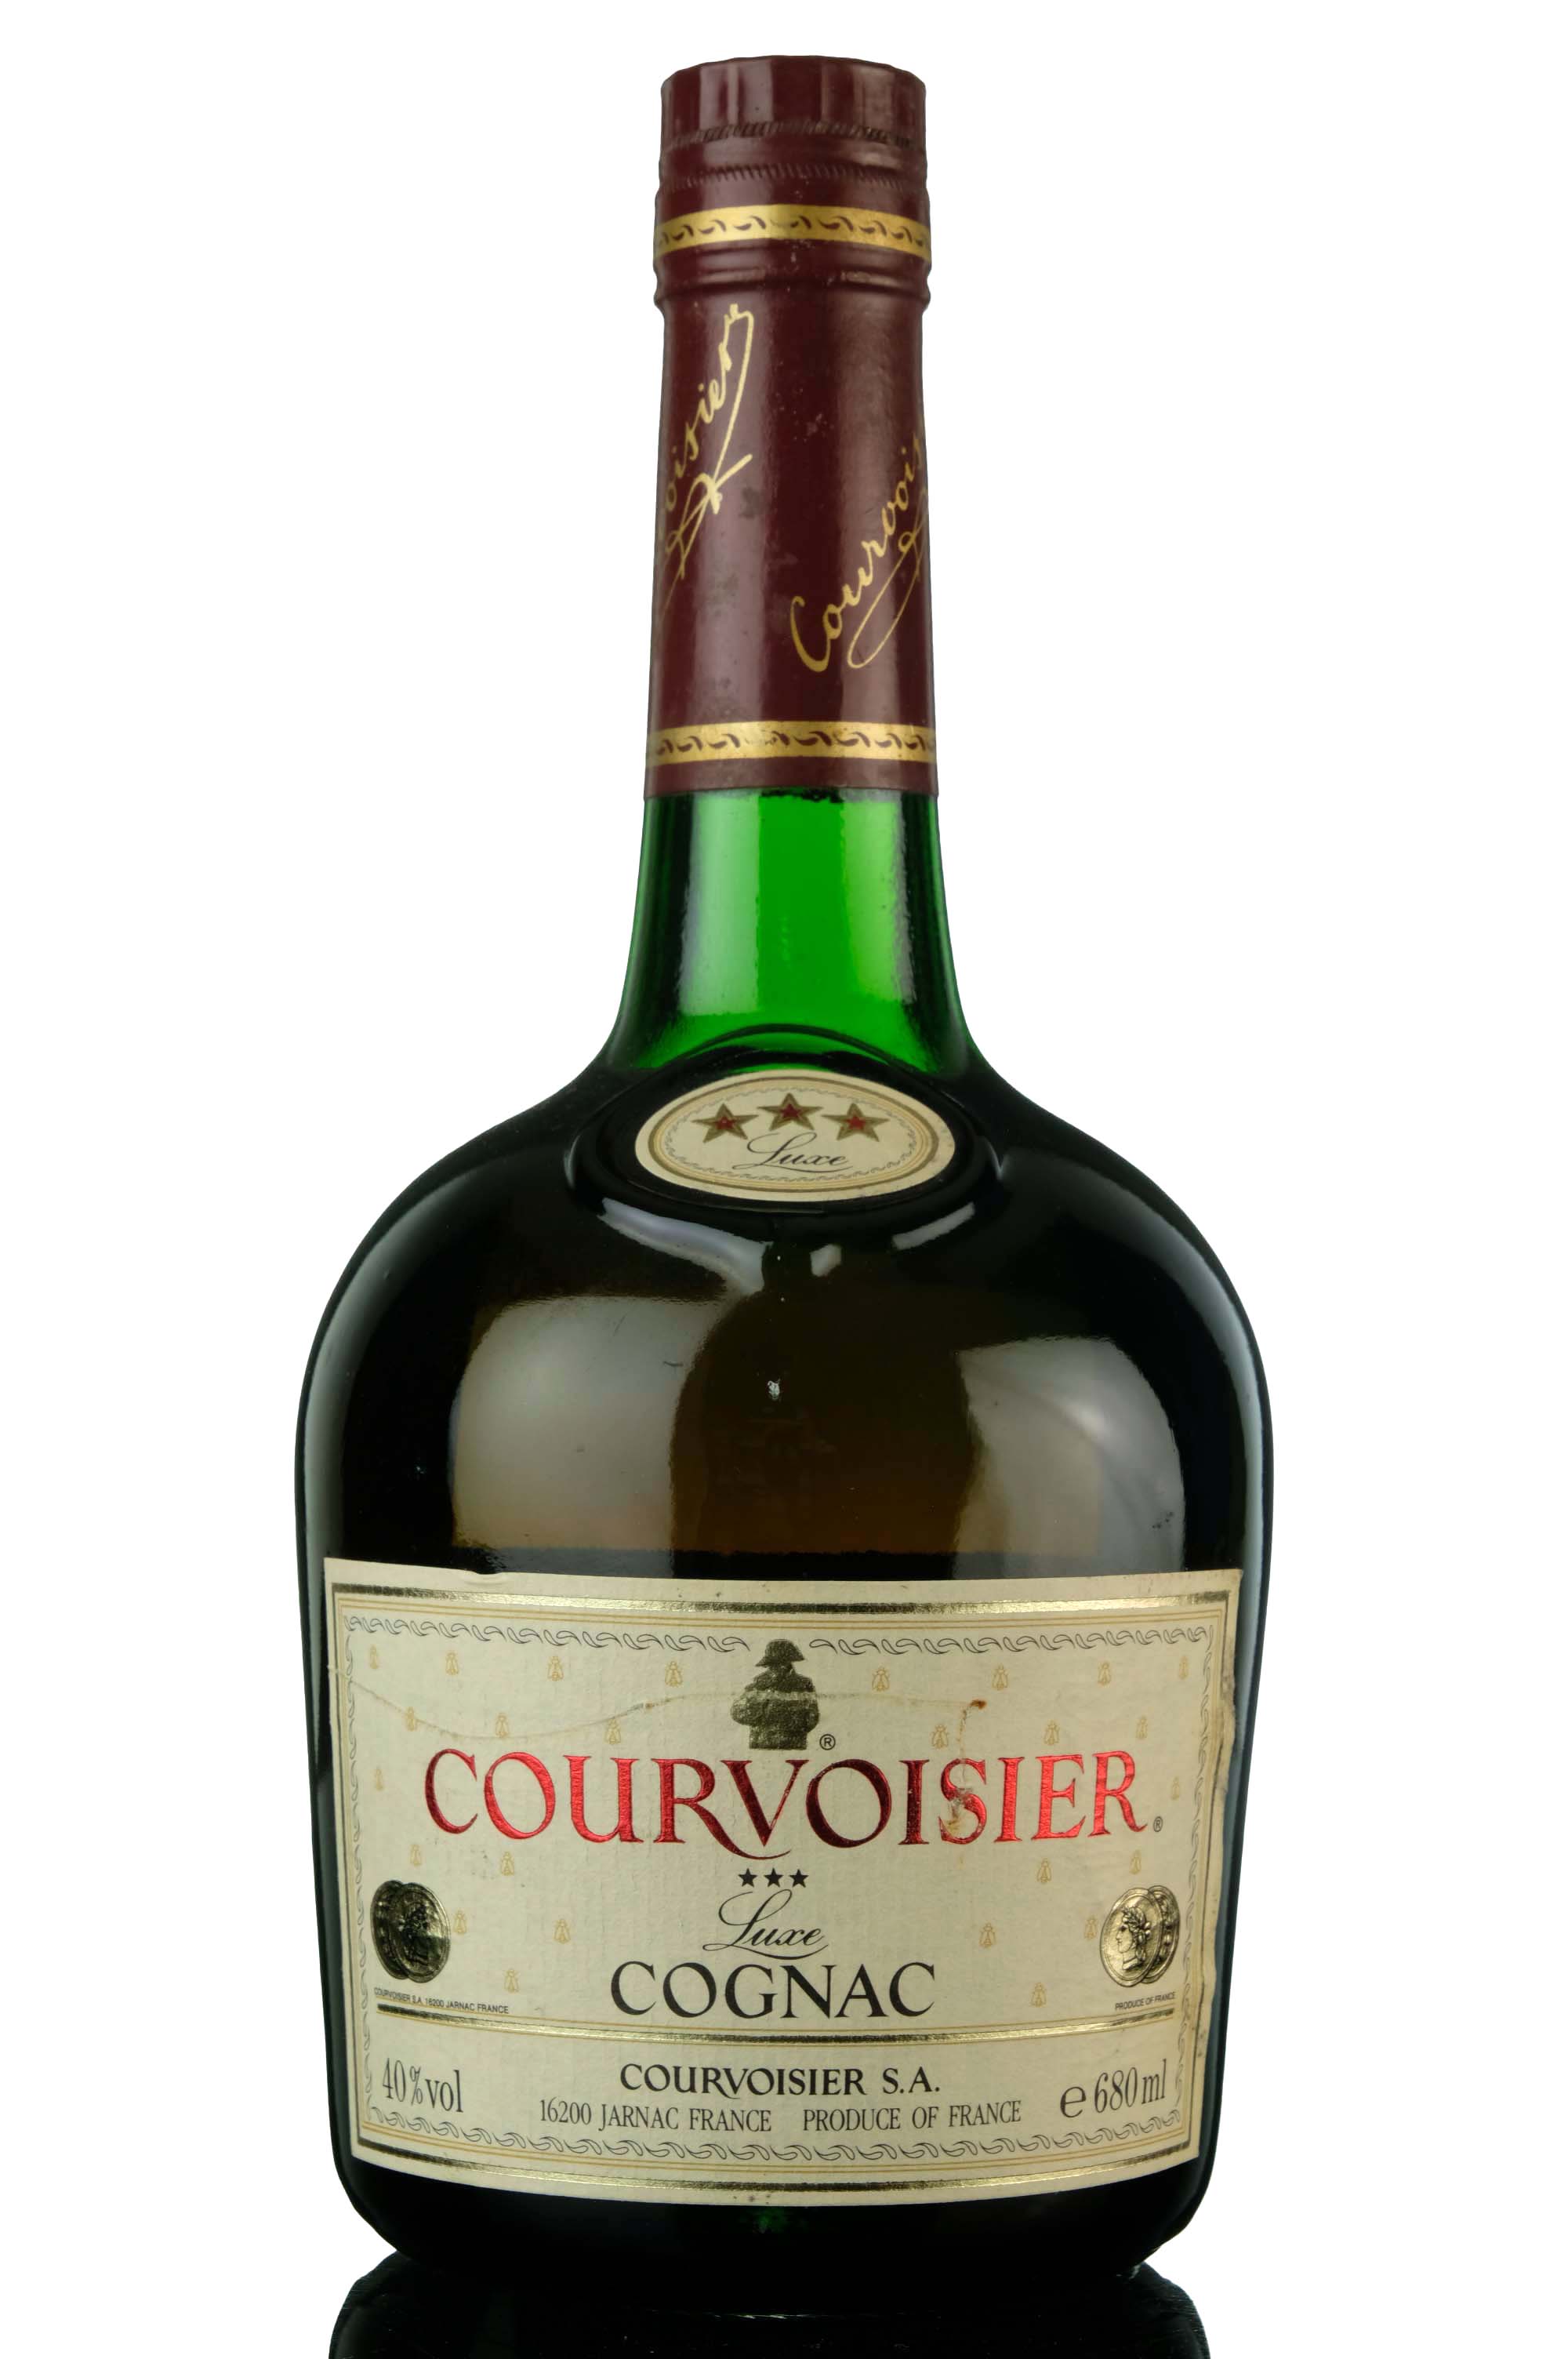 Courvoisier Luxe 3 Star Cognac